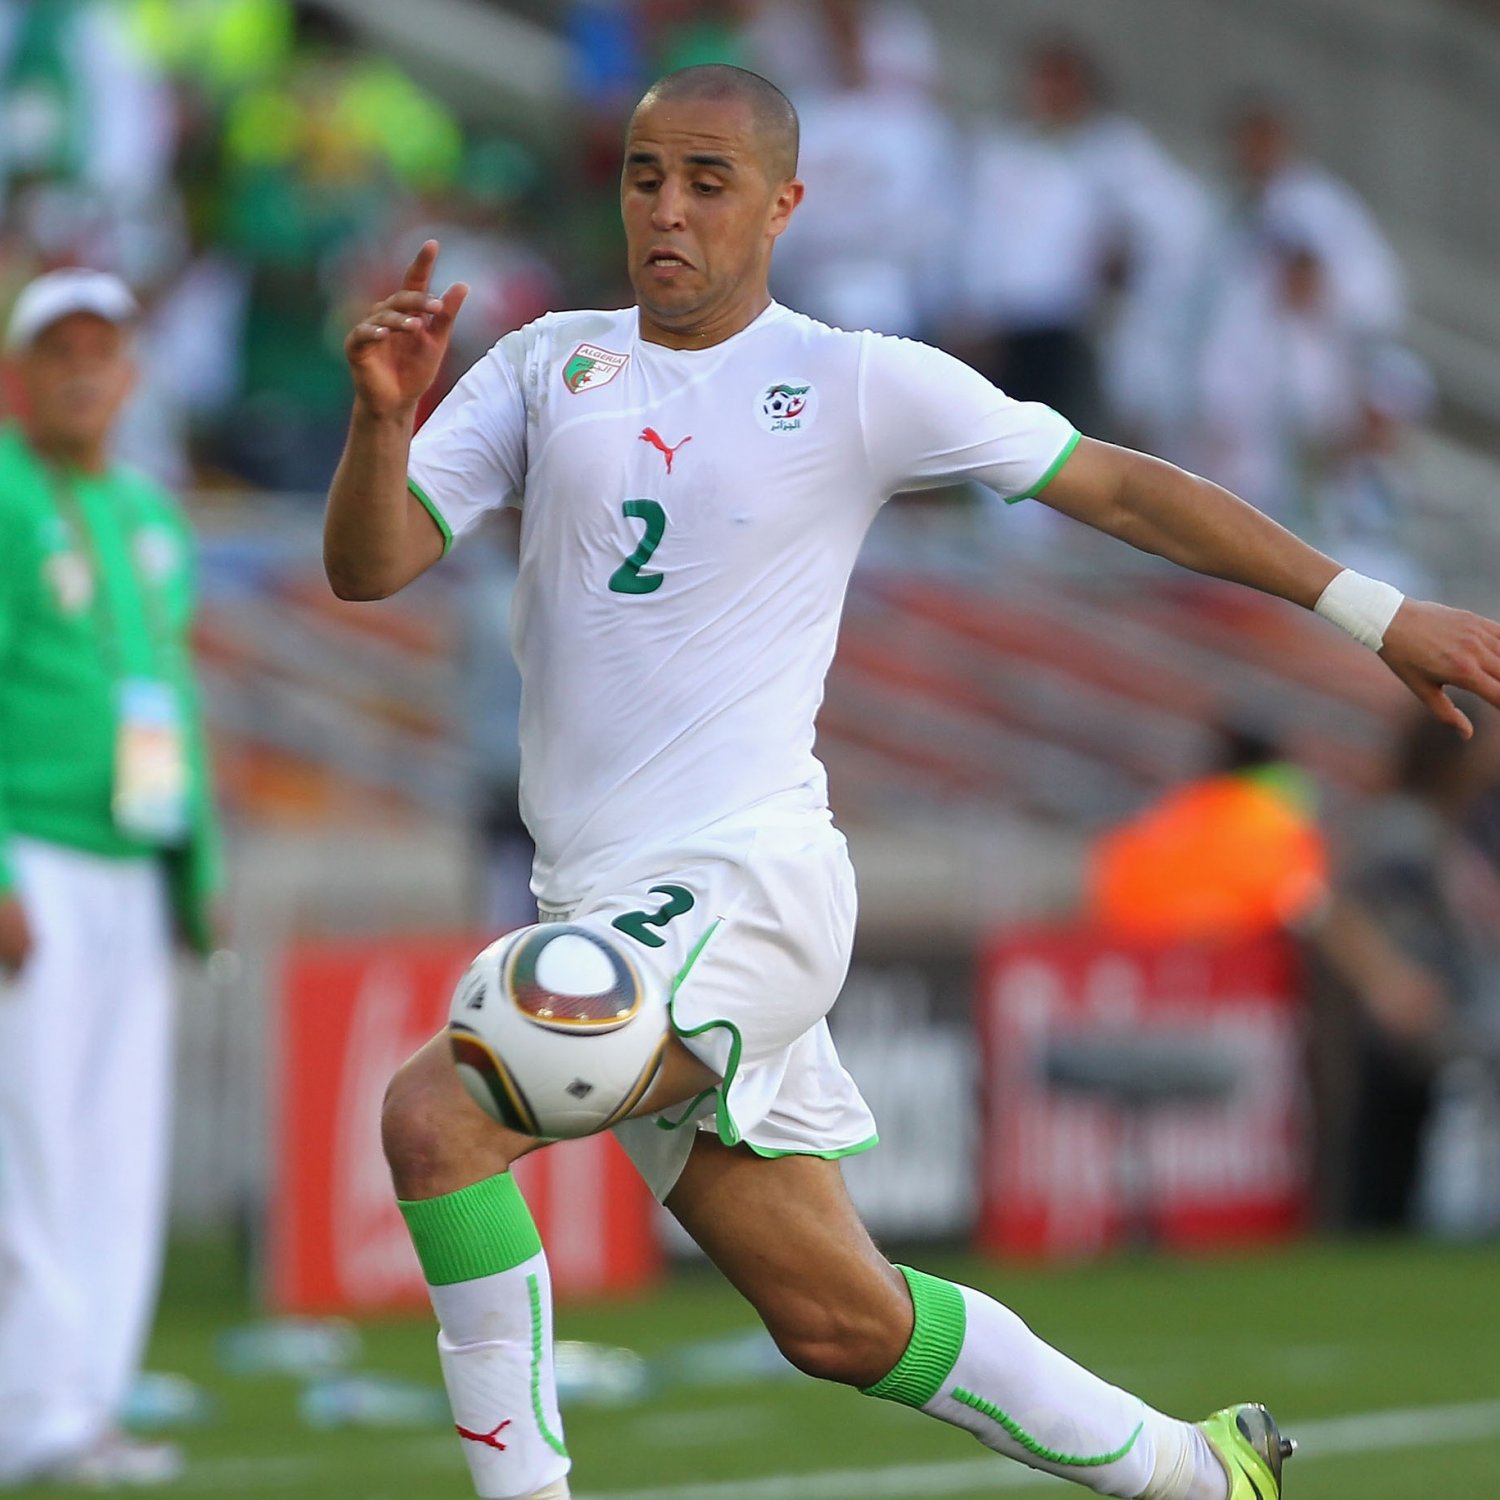 Muslim XI: Pemain Muslim Di Babak 16 Besar Piala Dunia Yang Bertepatan dg Ramadhan